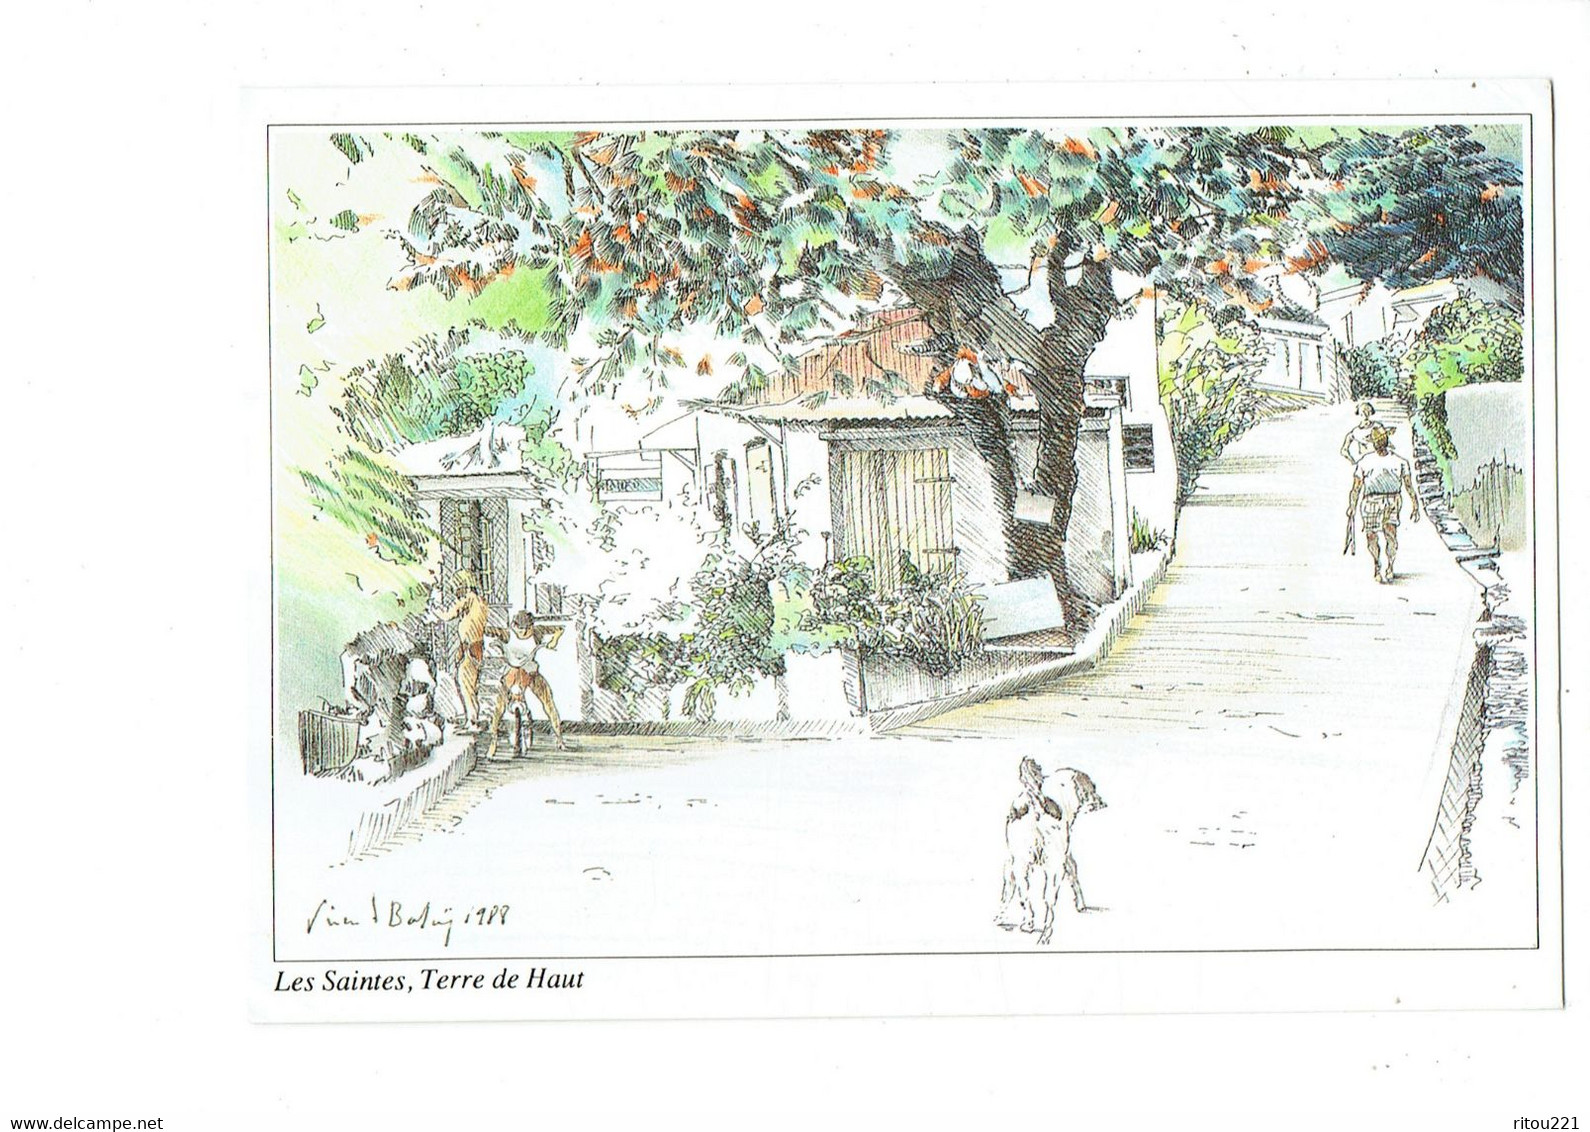 Cpm - GUADELOUPE - LES SAINTES - TERRE DE HAUT - Illustration Vincent BALAY - Anse Du Bourg - 1992 - Chien Bicyclette - Saint Martin